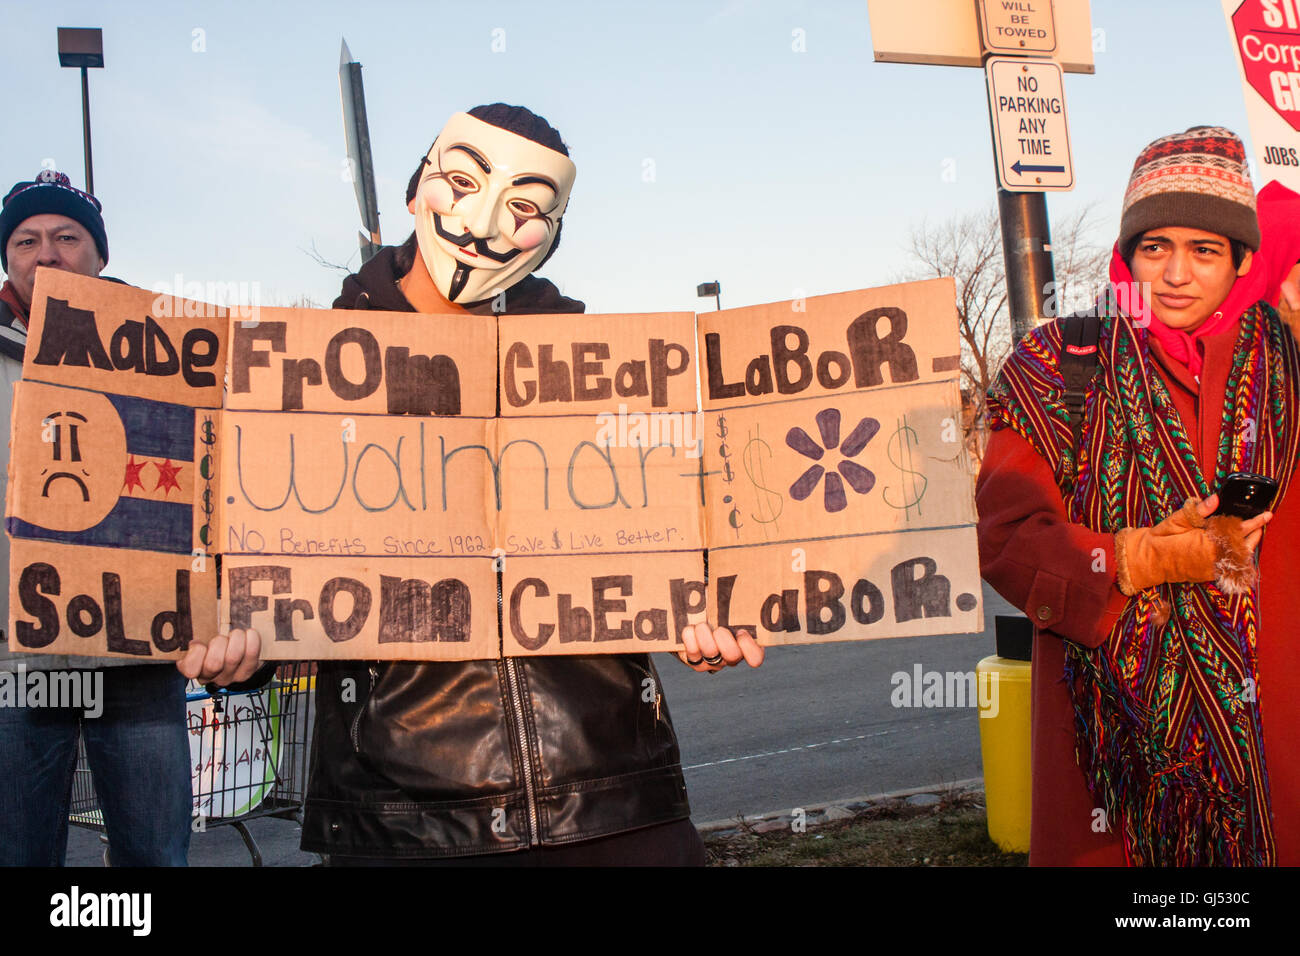 Chicago, Illinois - 29. November 2013: Mann trägt eine anonymen Maske protestiert vor einem Walmart-Geschäft zur Unterstützung der Streikenden am schwarzen Freitag. Stockfoto